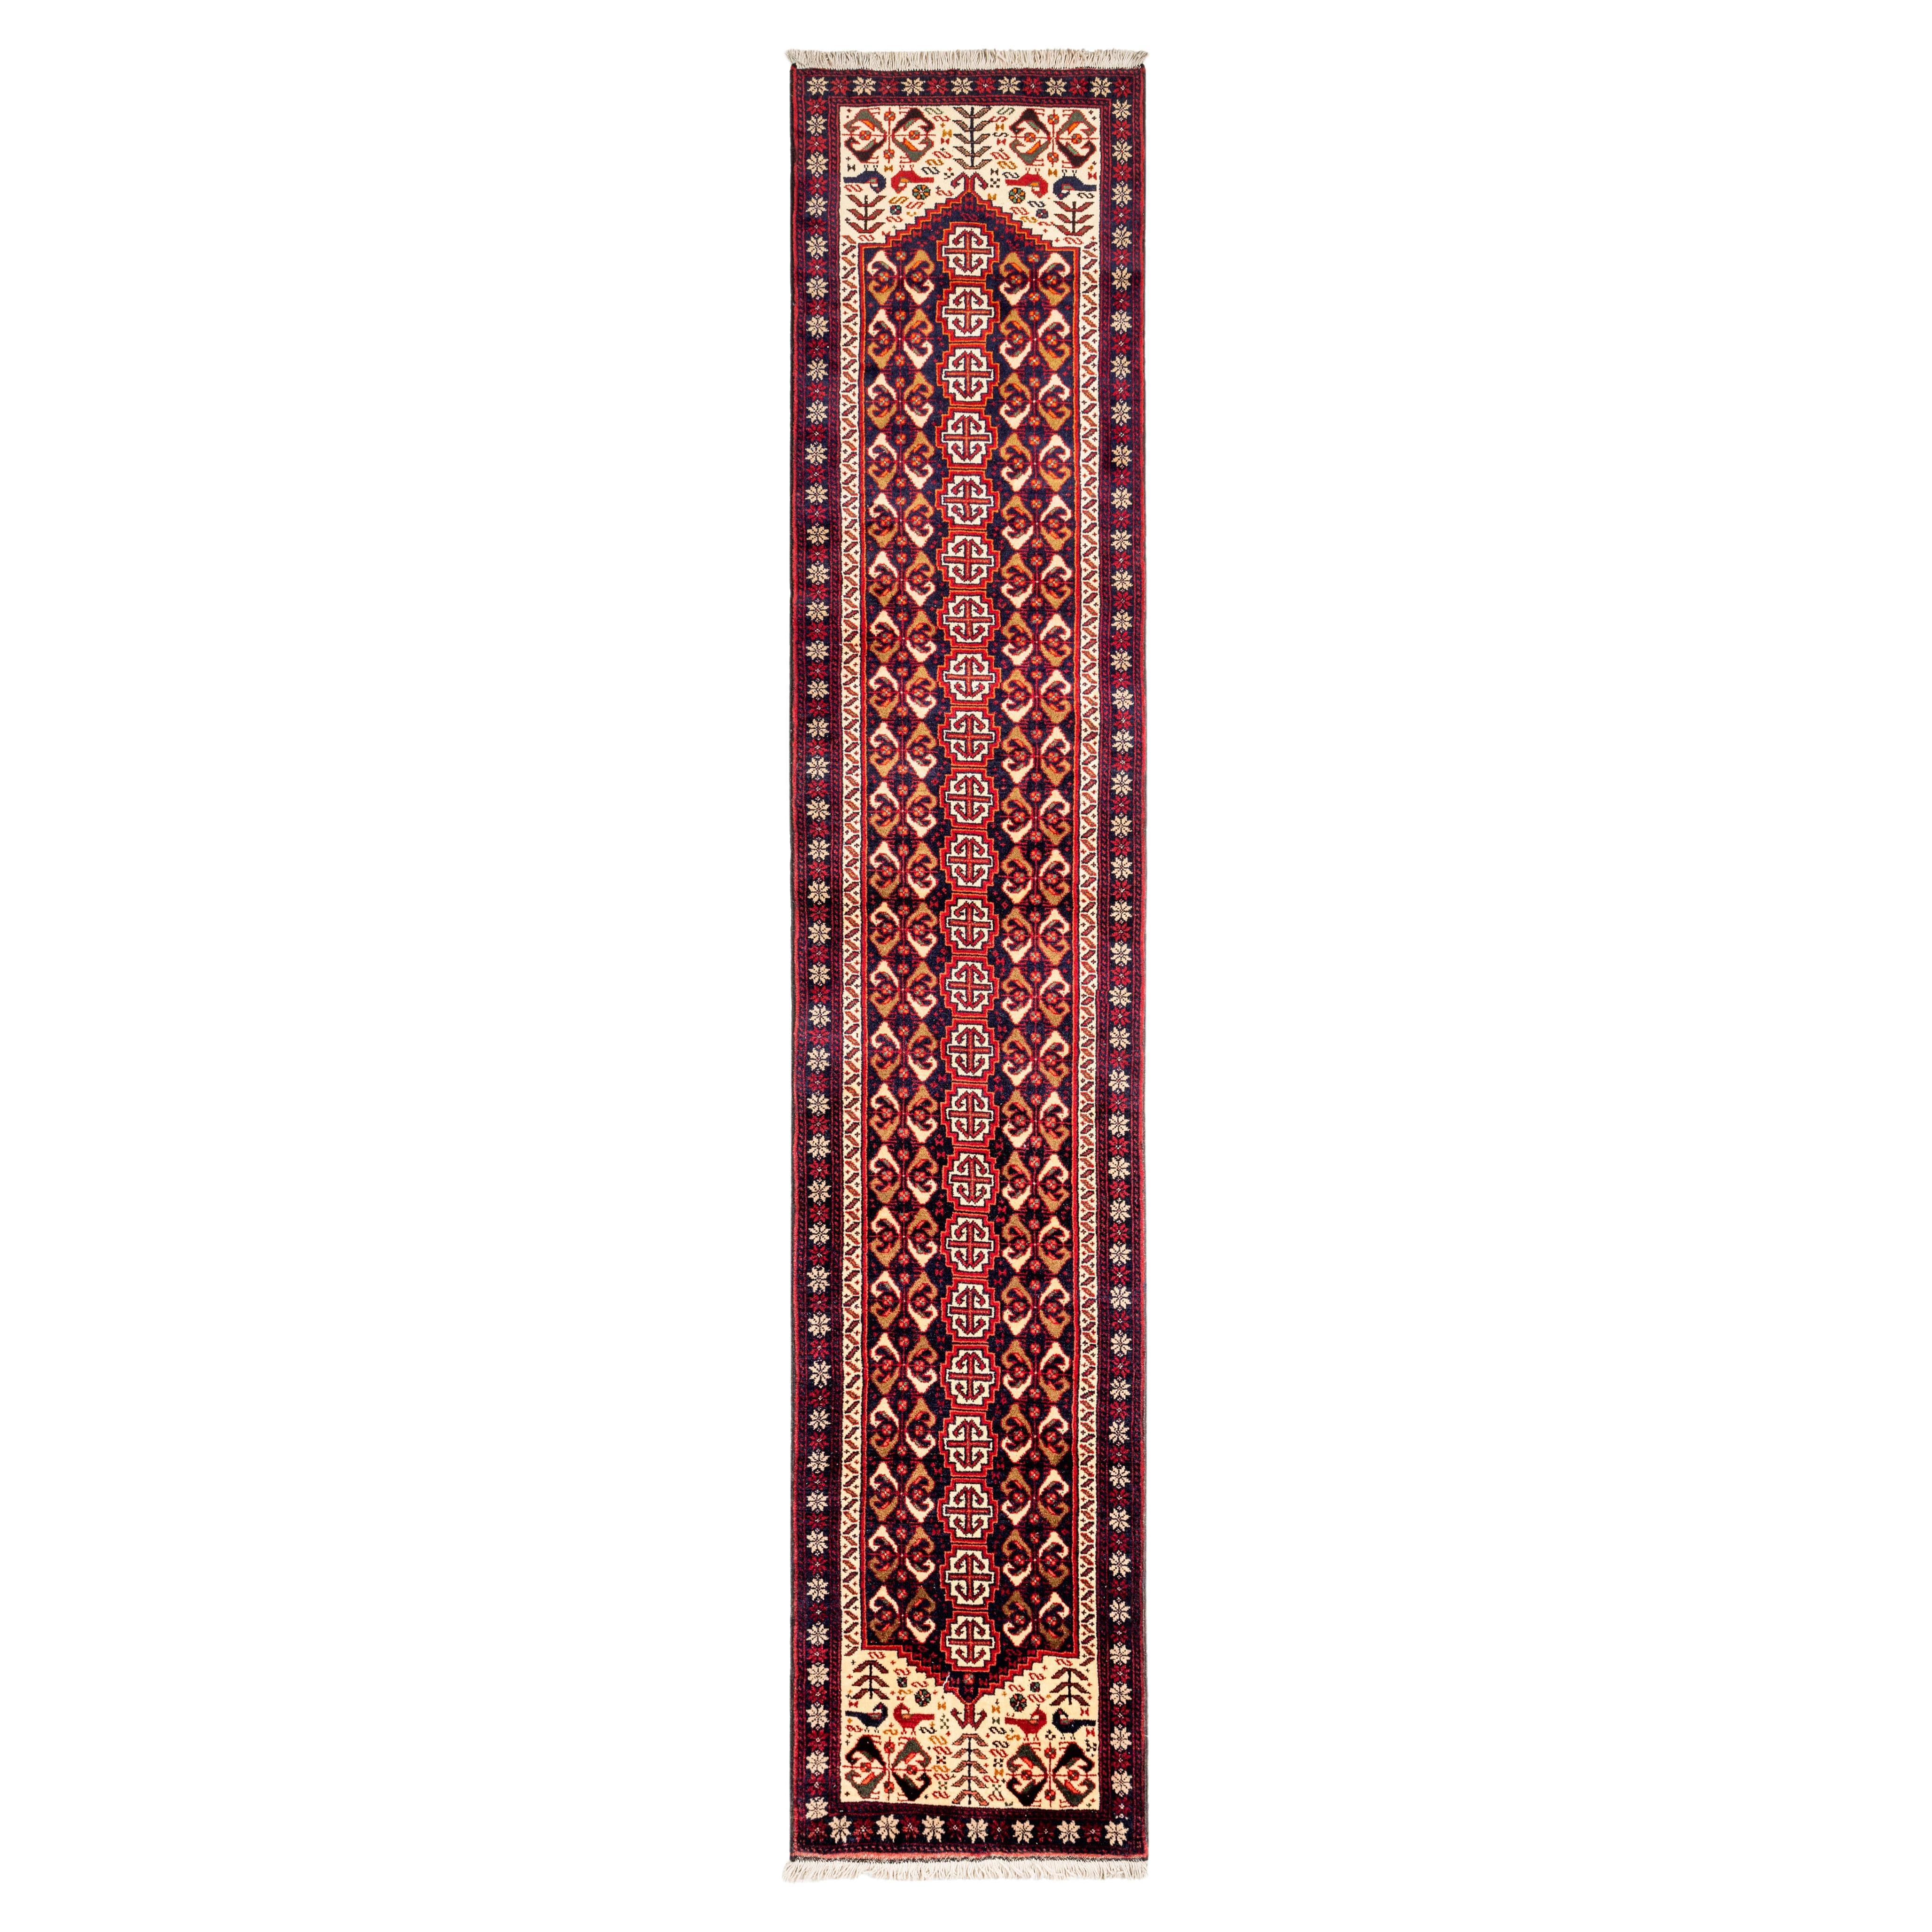 Authentique tapis de couloir persan rouge/ivoire 2' 3" x 11' 9"